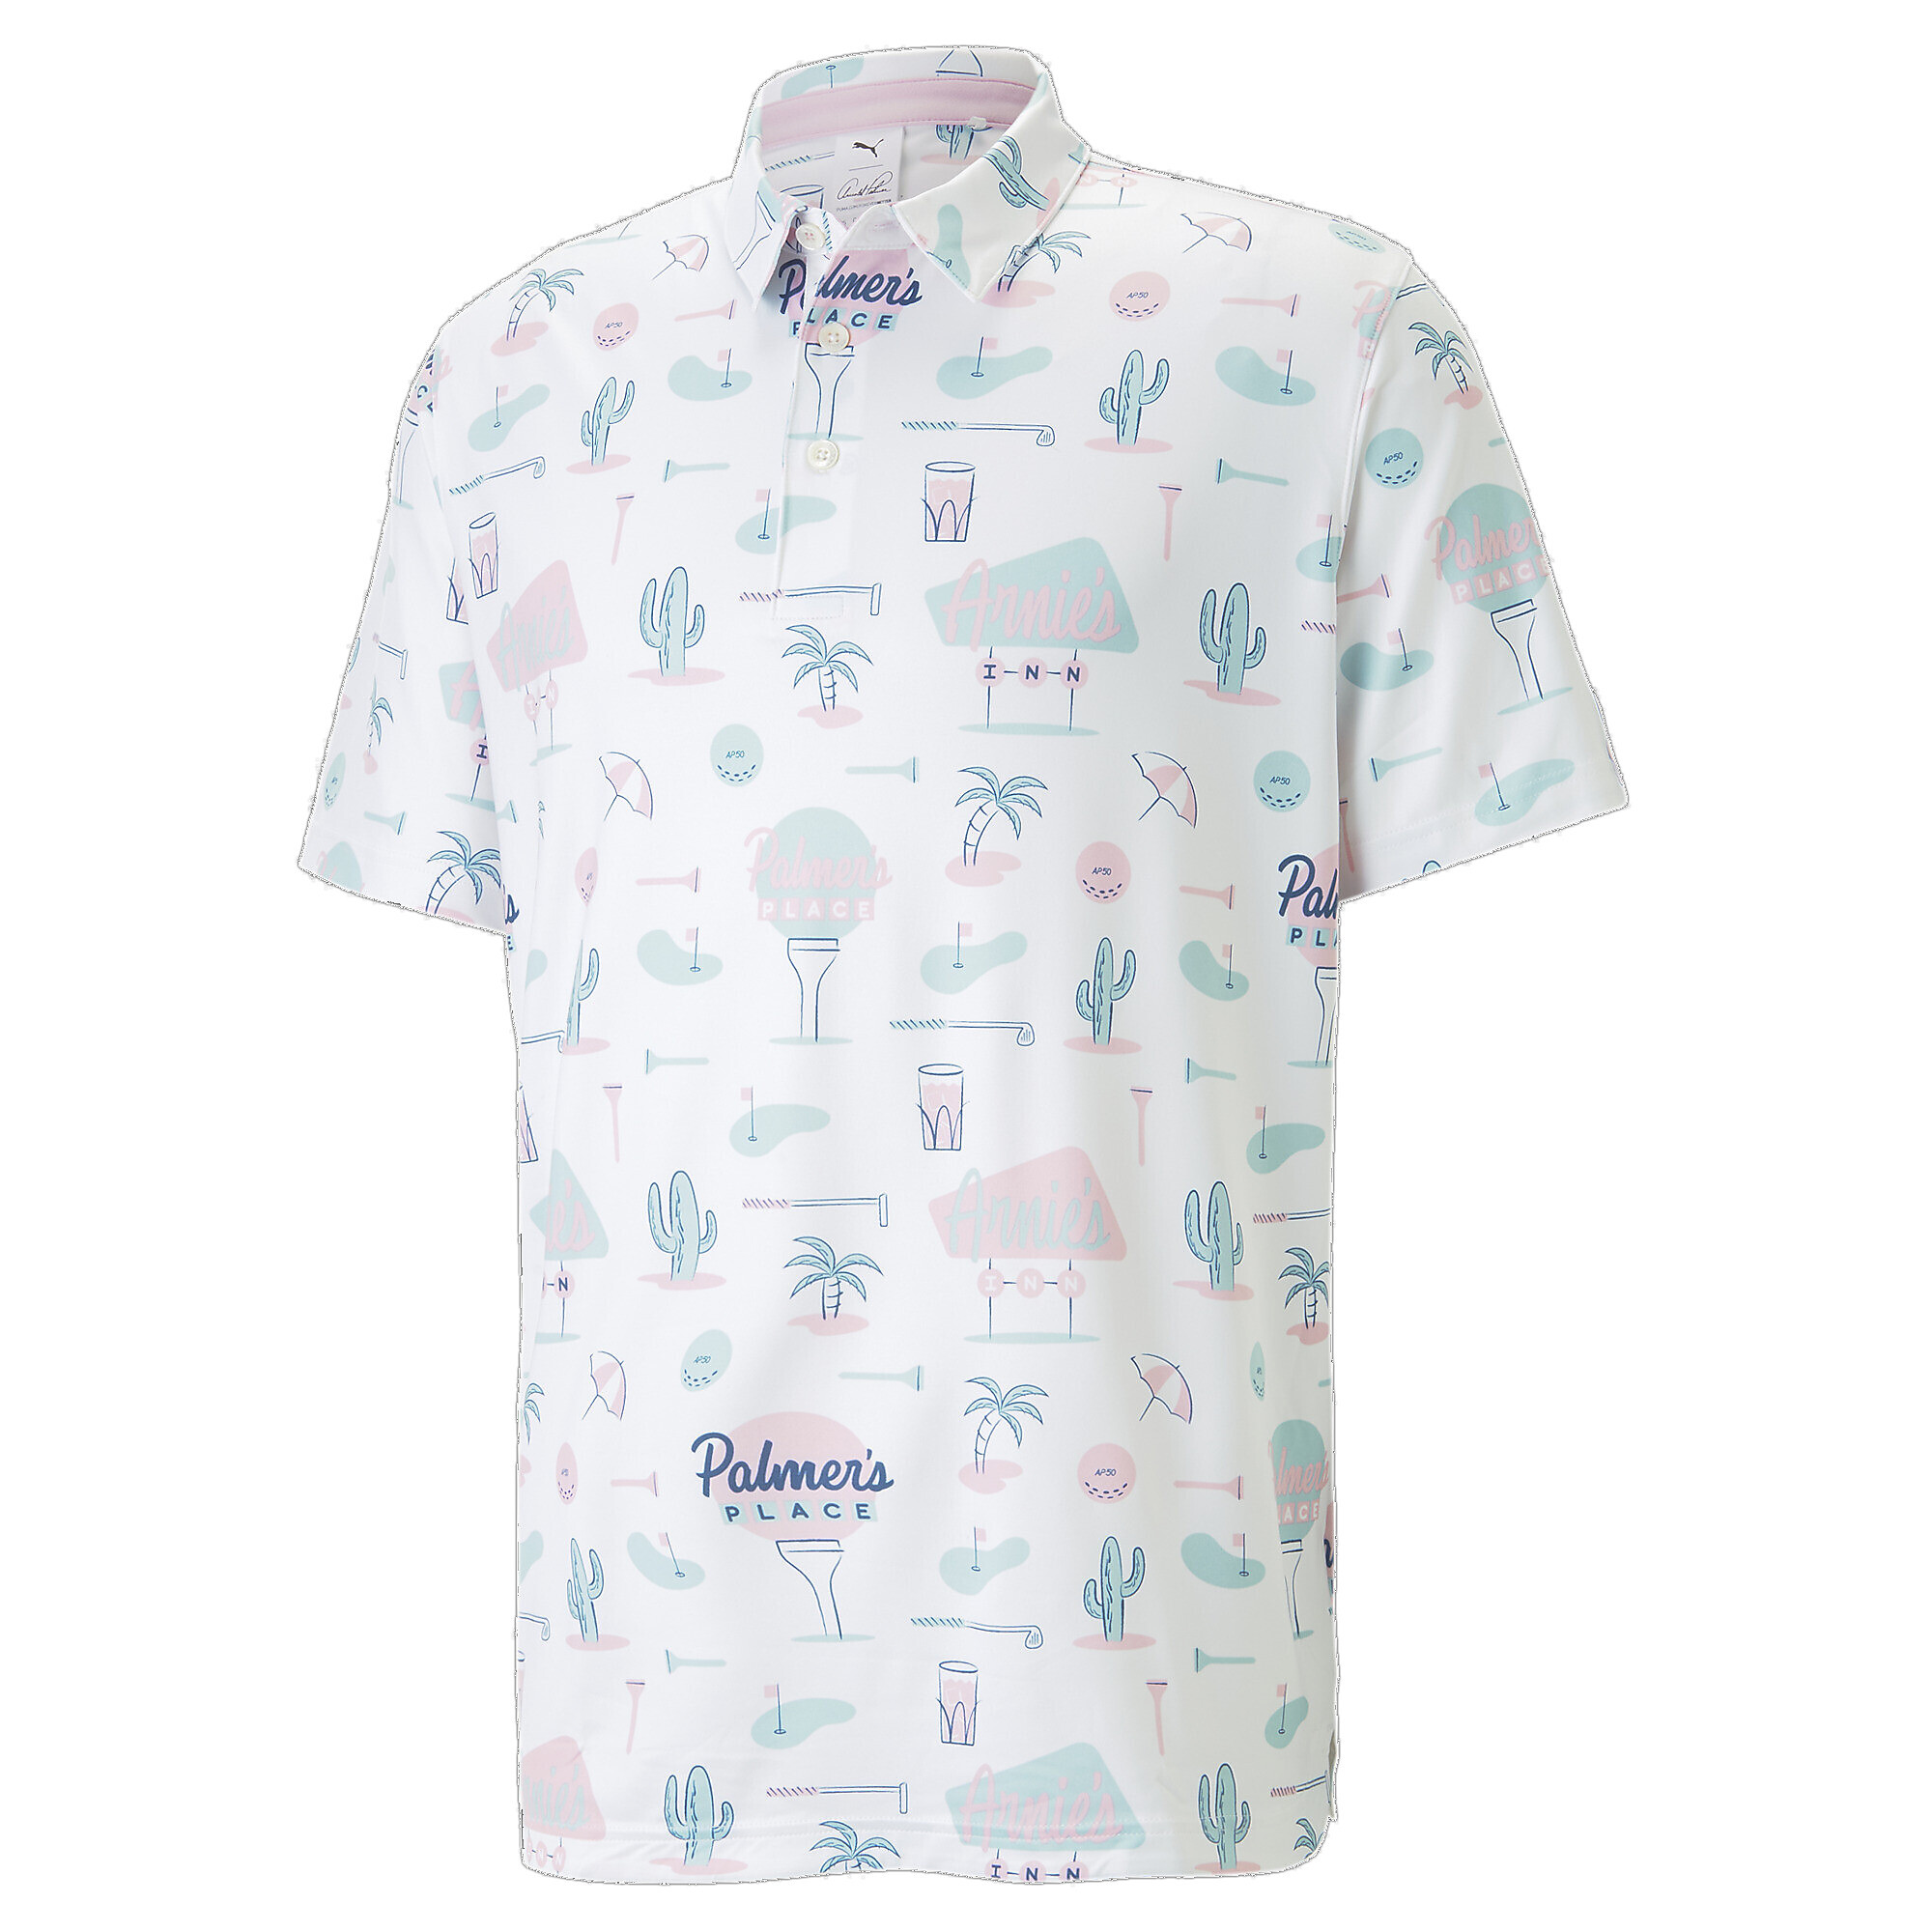 ＜プーマ公式通販＞ プーマ メンズ ゴルフ PUMA × ARNOLD PALMER MATTR 62 ポロシャツ メンズ Pale Pink ｜PUMA.com